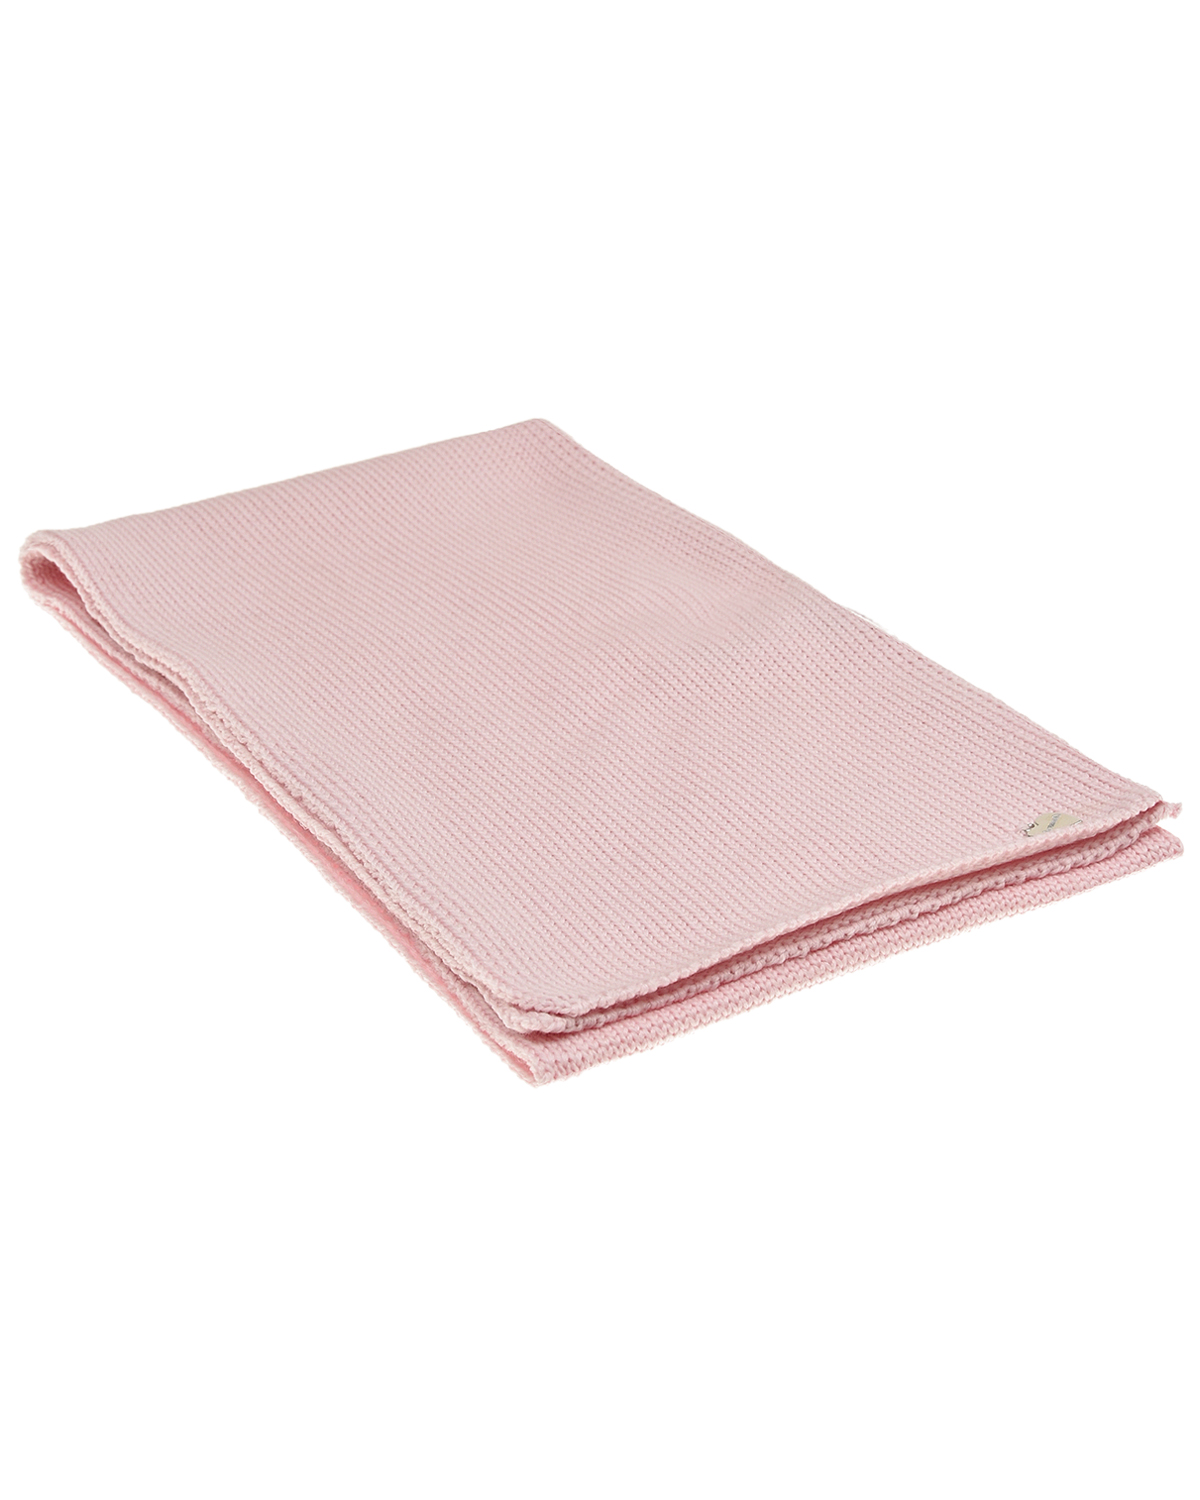 Розовый шарф 140х19 см Il Trenino детский, размер unica